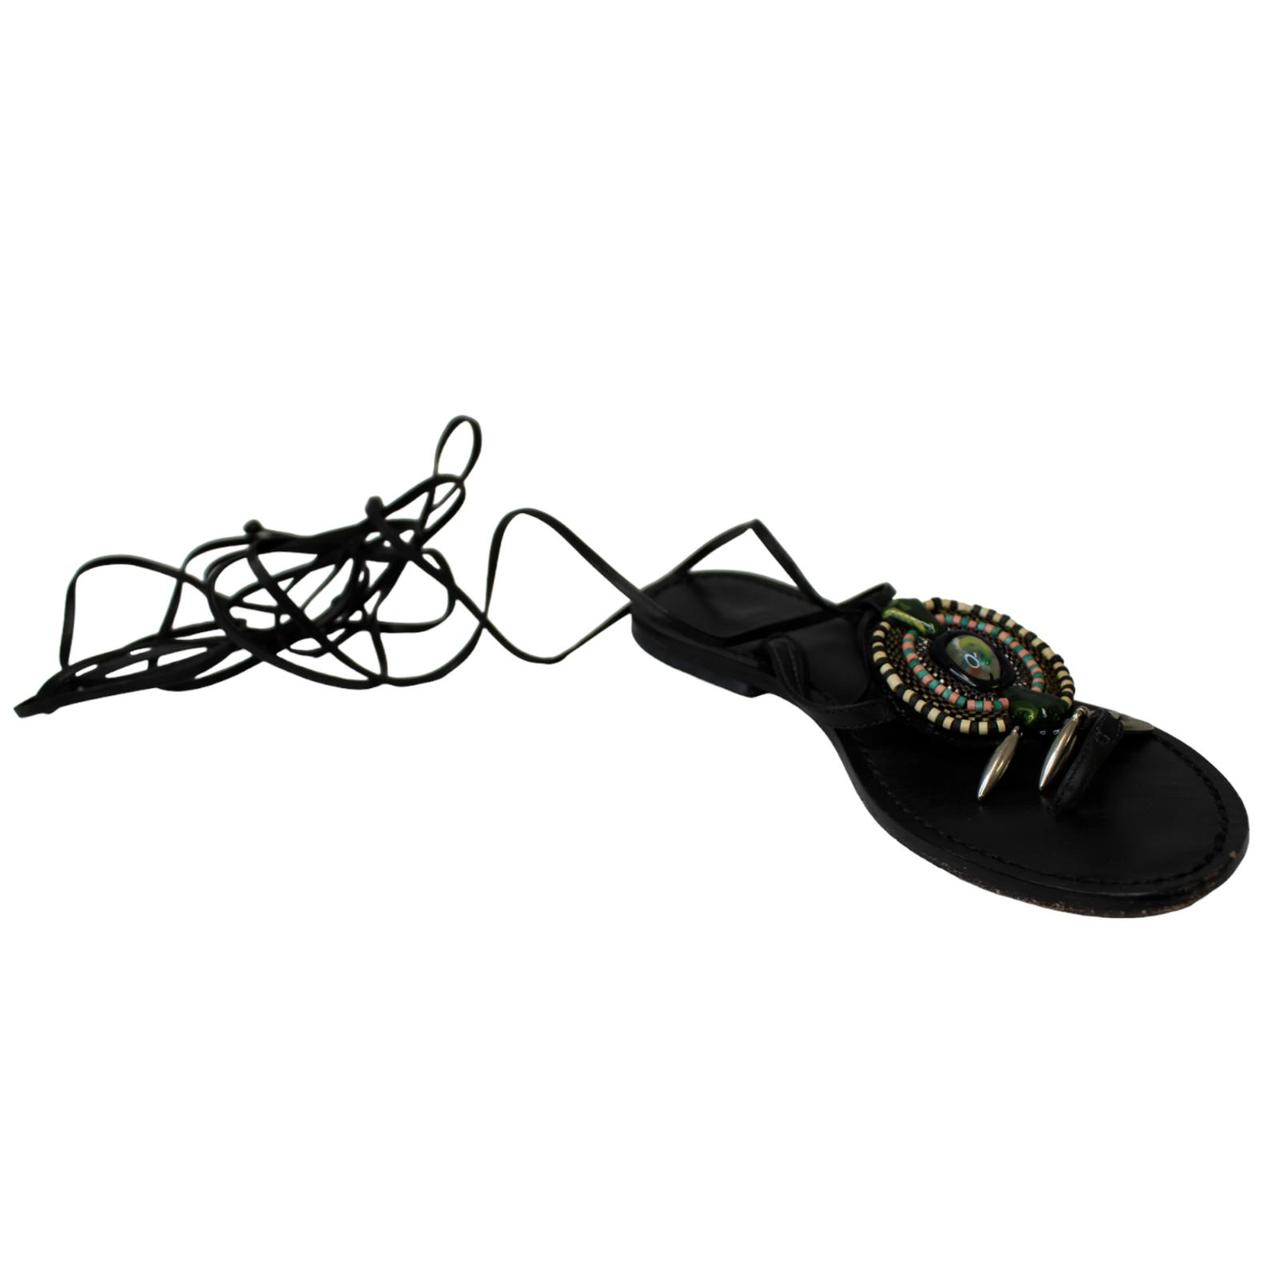 Schutz Women's Black Sandals